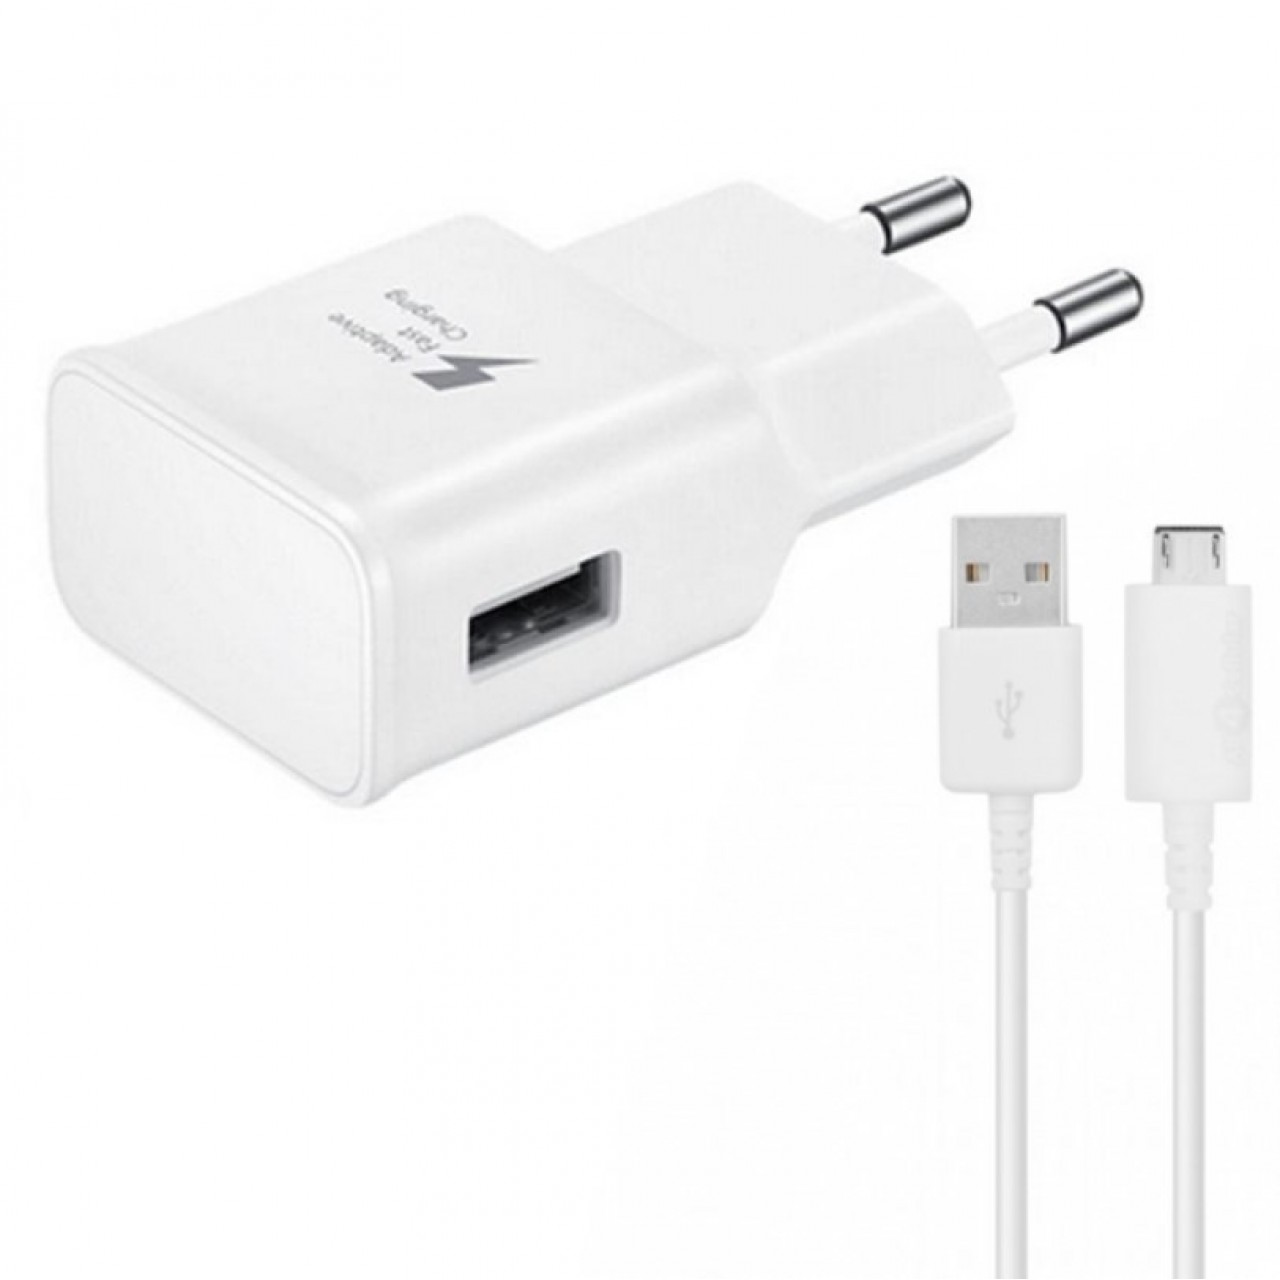 Φορτιστής Fast Charge 5V/1A 220A 1 x USB Micro USB cable - 4918 - Λευκό - ΟΕΜ